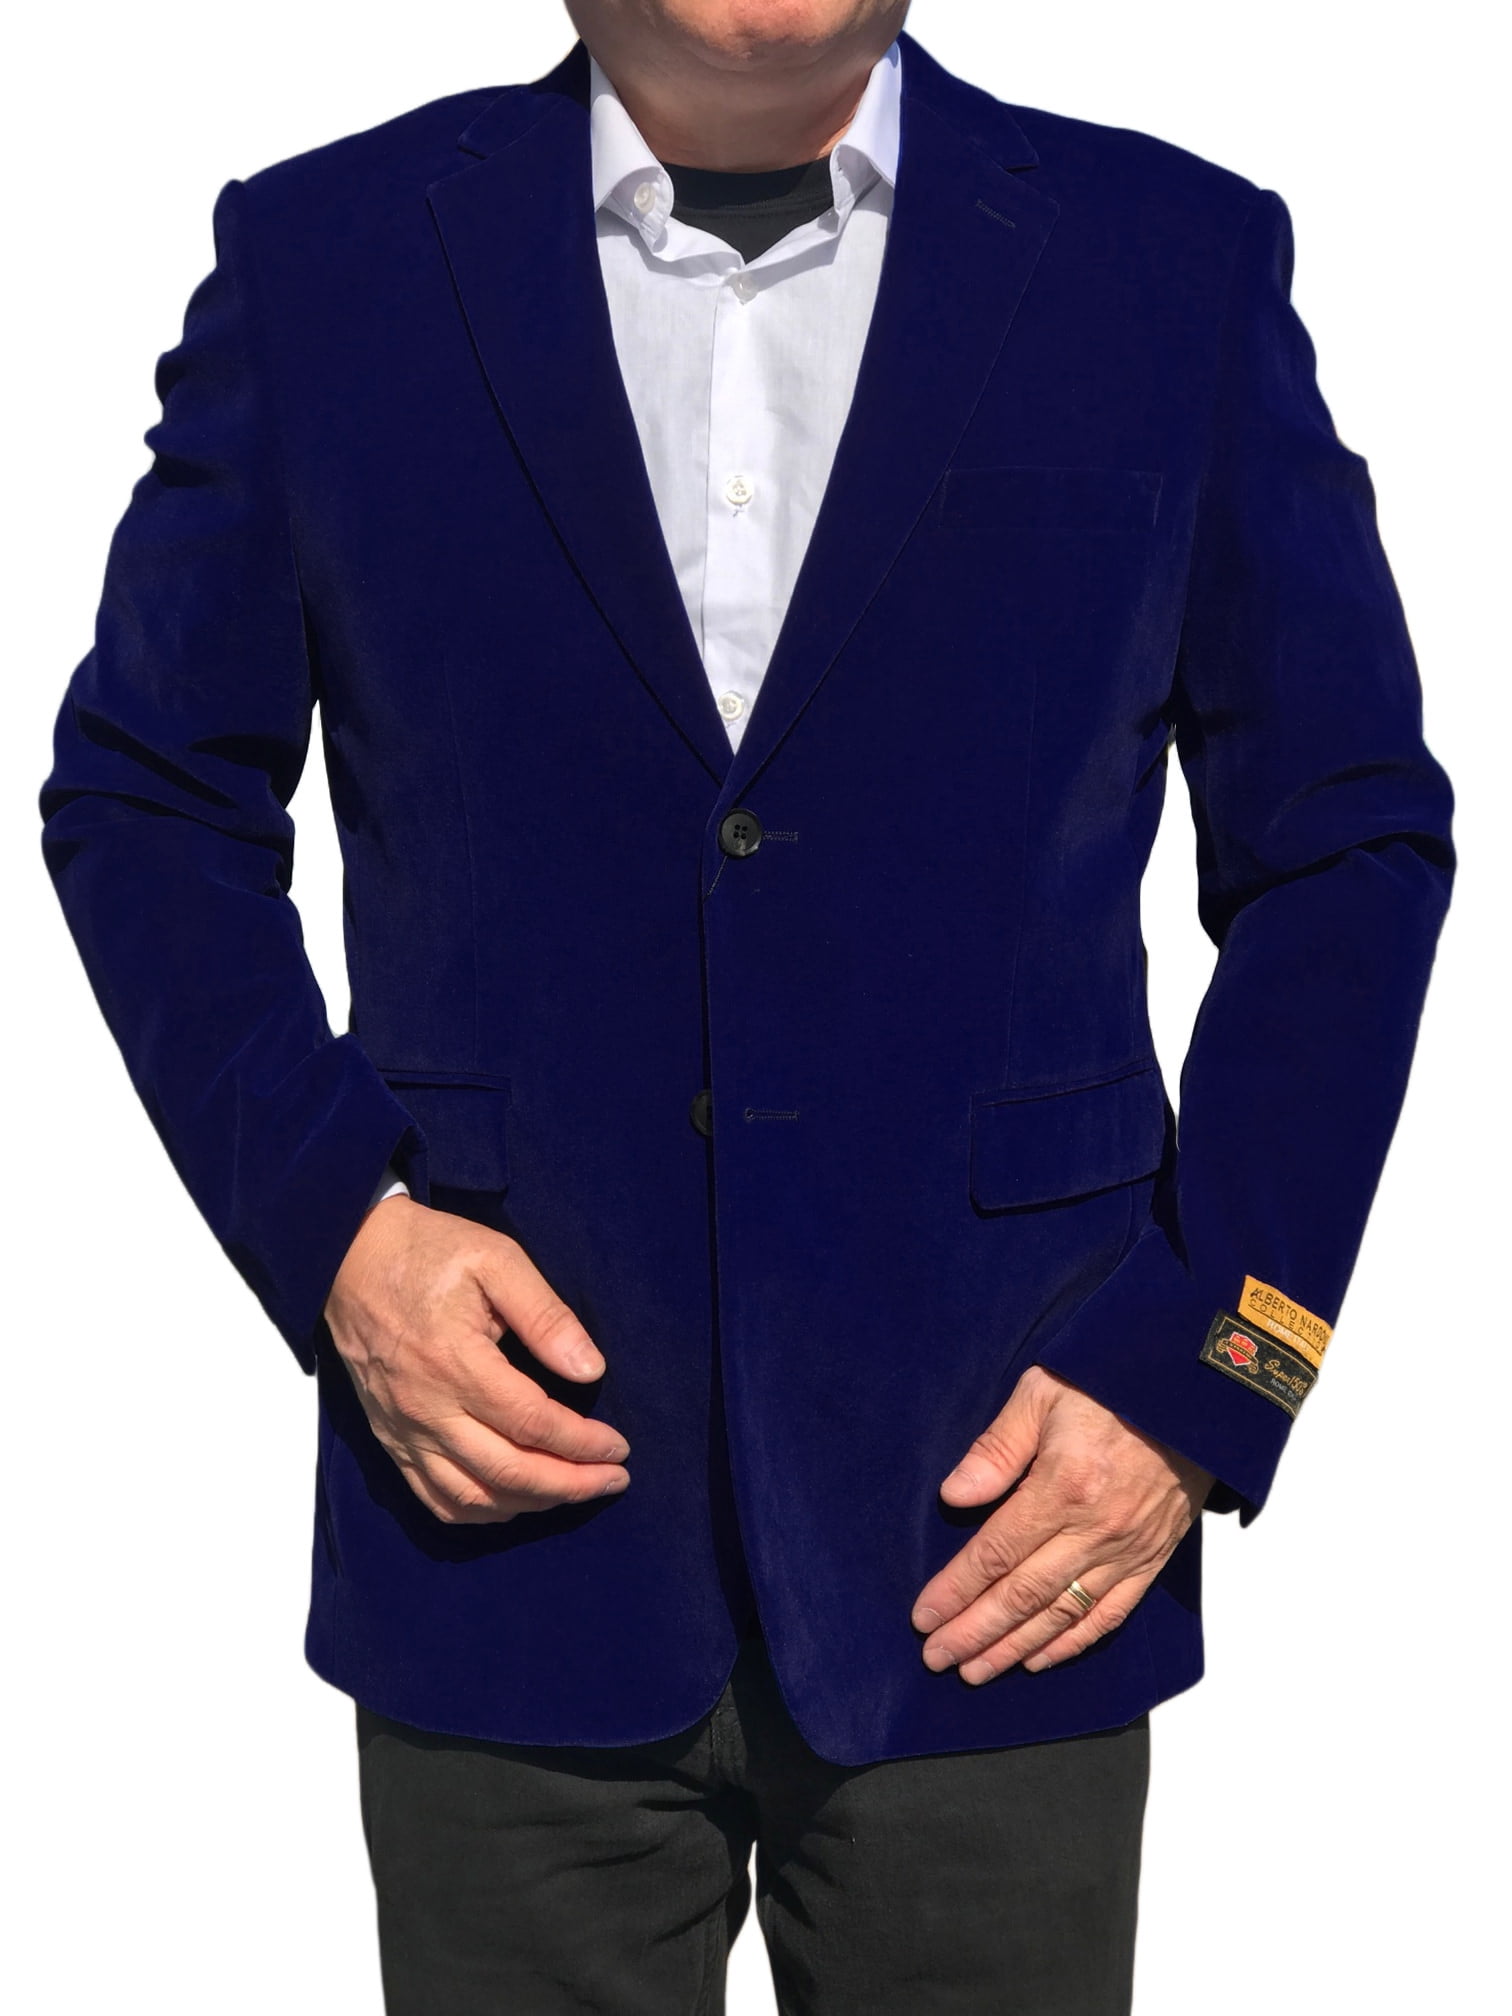 YOUTHUP Mens Blazer Business Jacket Morden Stylish Suit Jackets Prom Coat